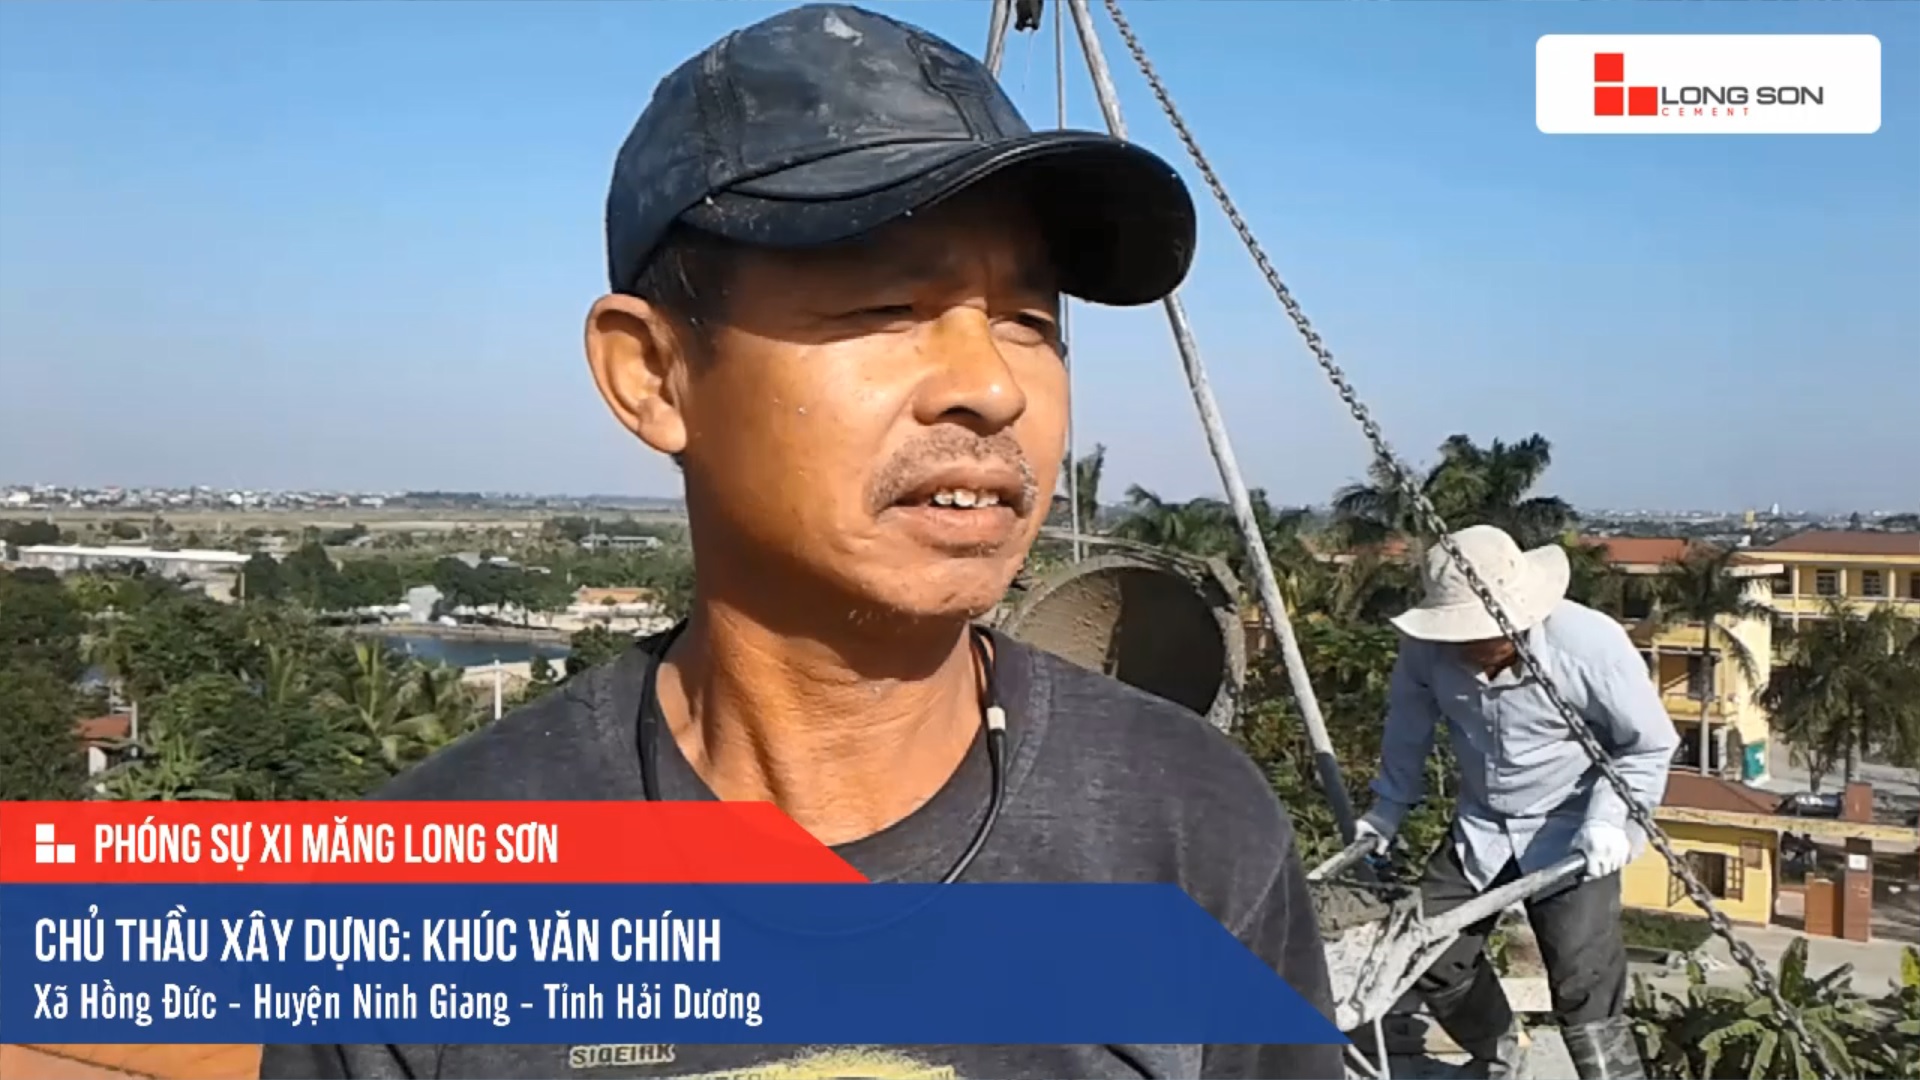 Phóng sự công trình sử dụng Xi măng Long Sơn tại Hải Dương 05.12.2019